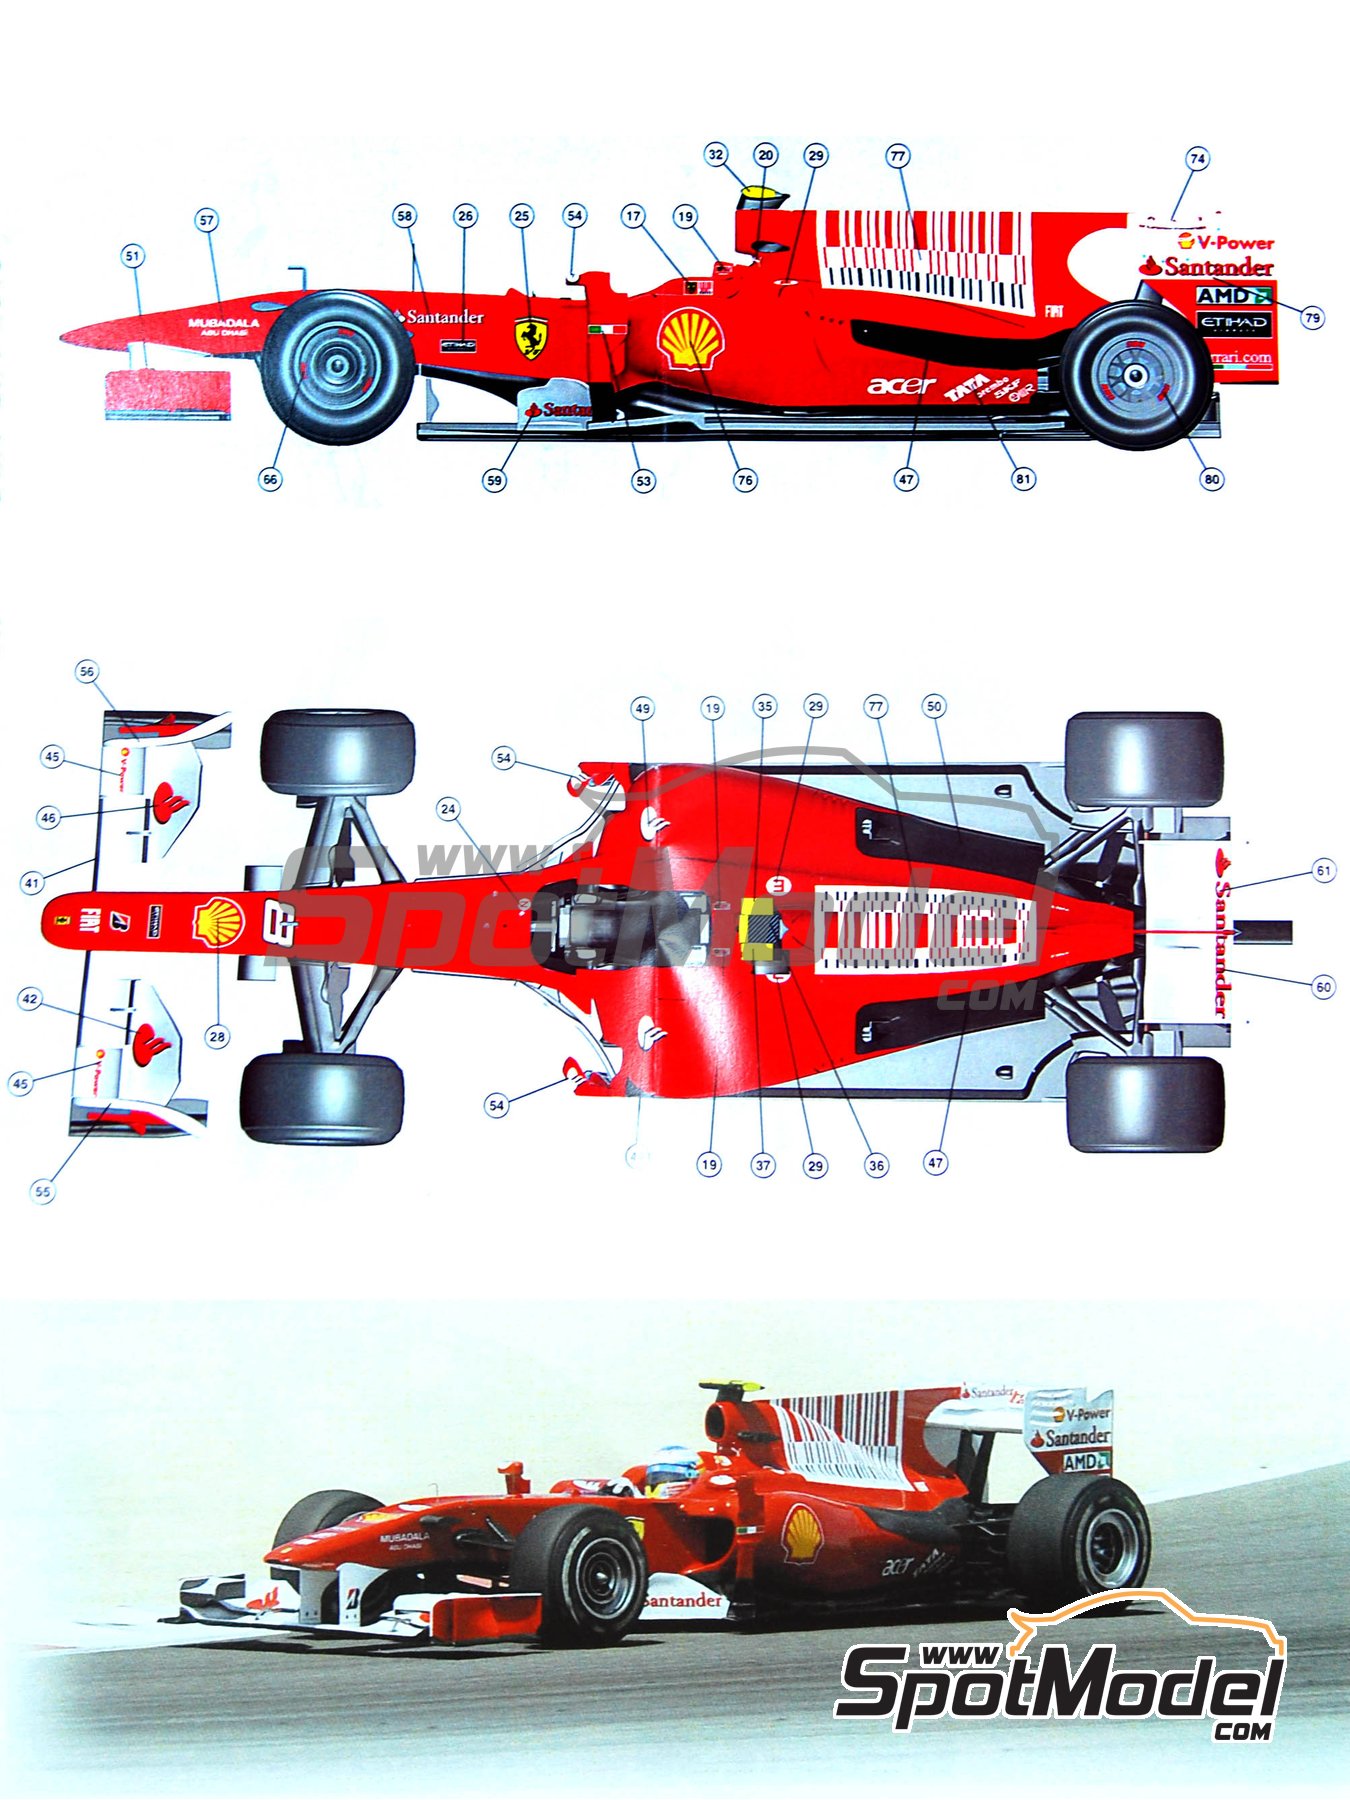 Fujimi model 1/20 Grand Prix series No.57 Ferrari F10 Italy GP 